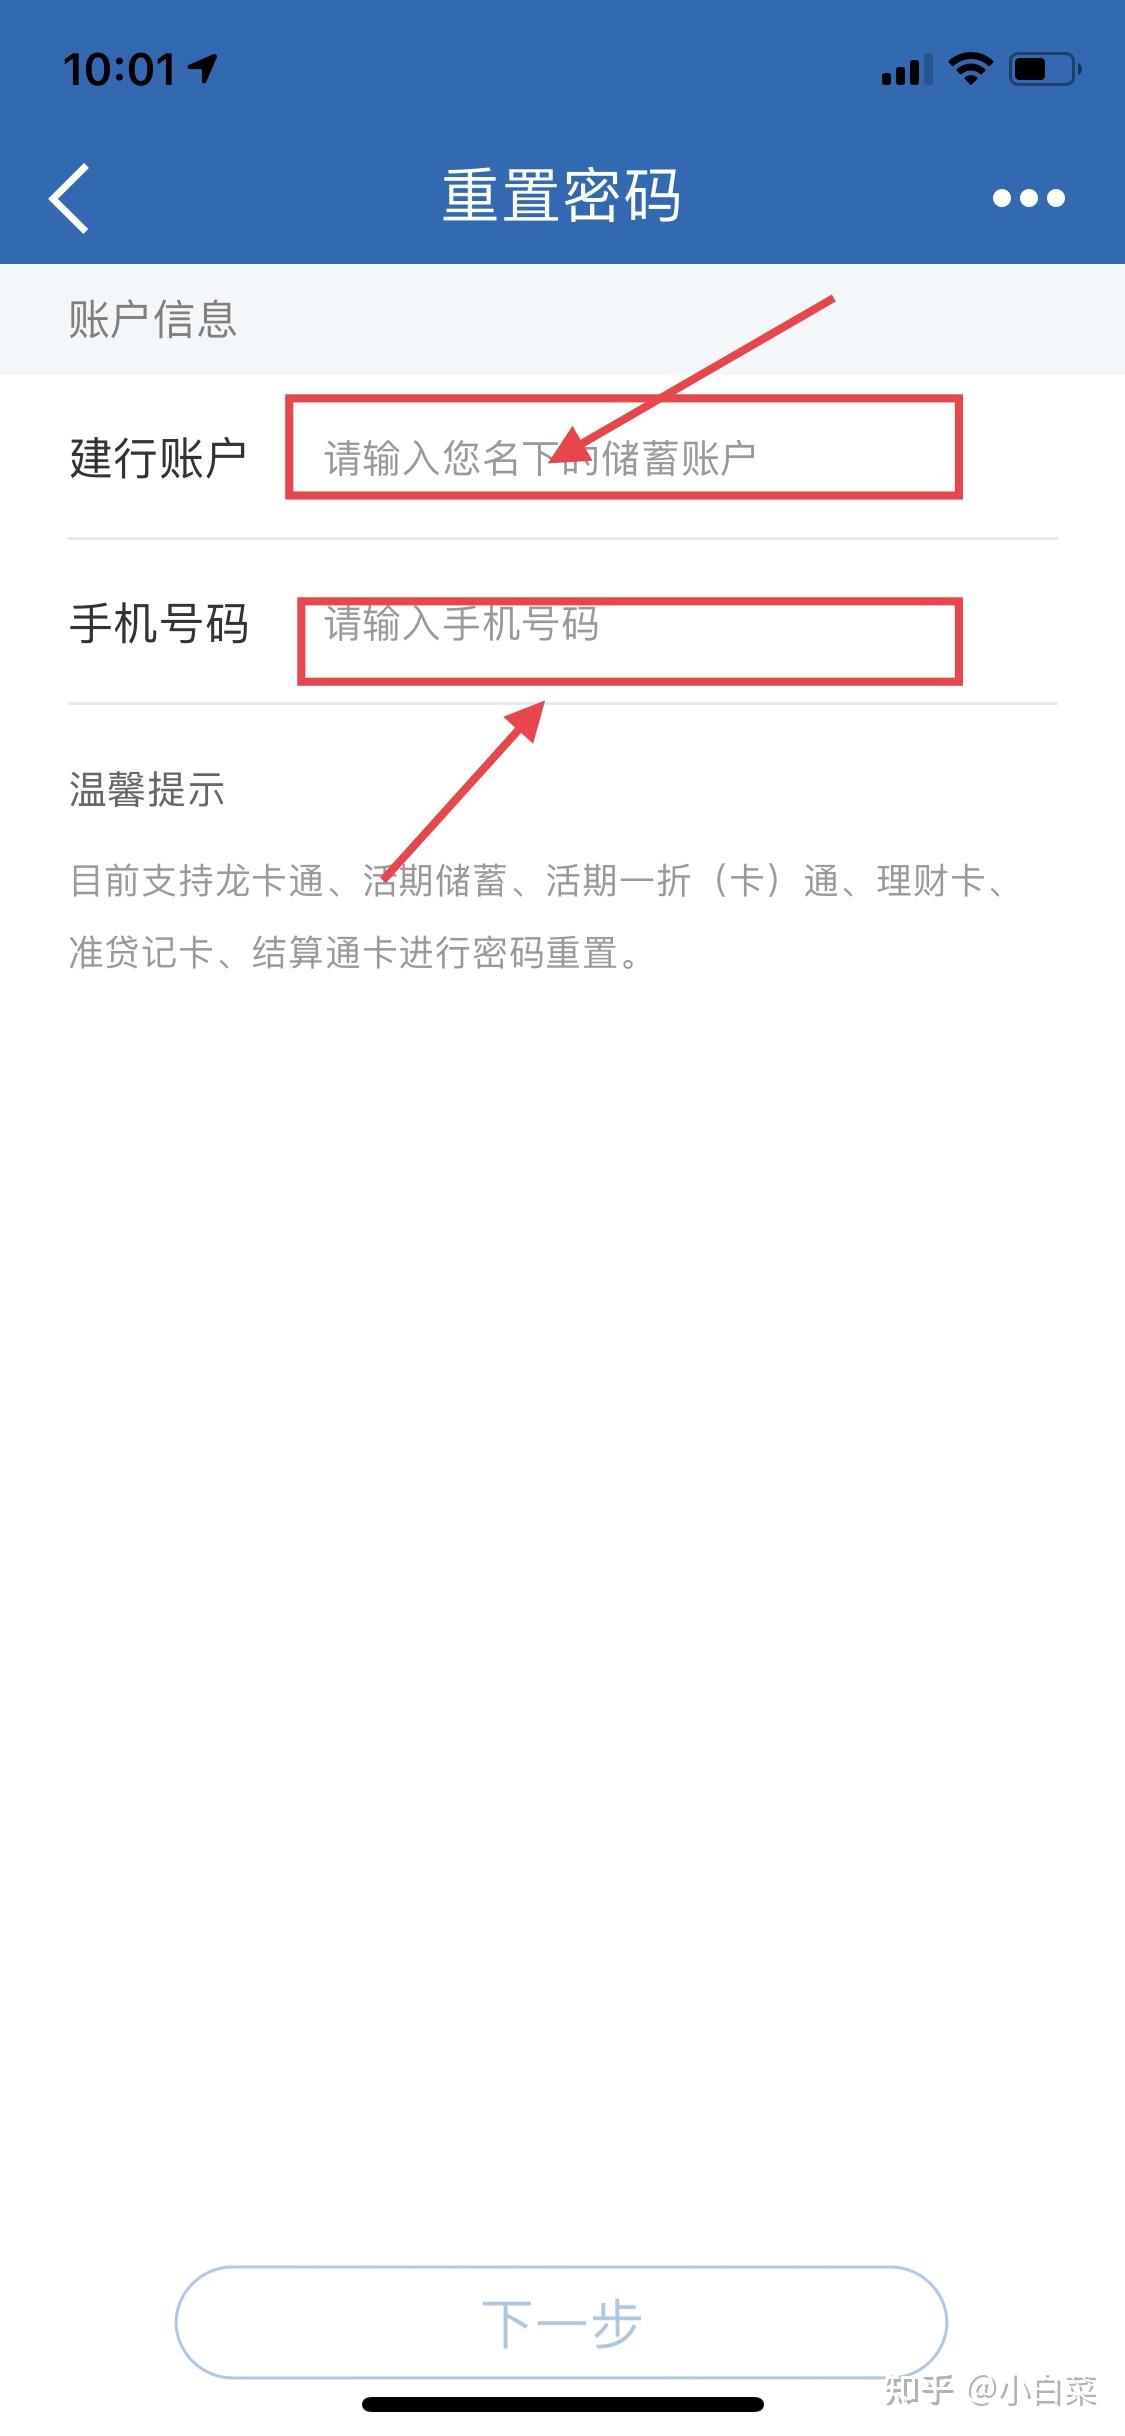 中国建设银行app密码忘记了怎么办? 